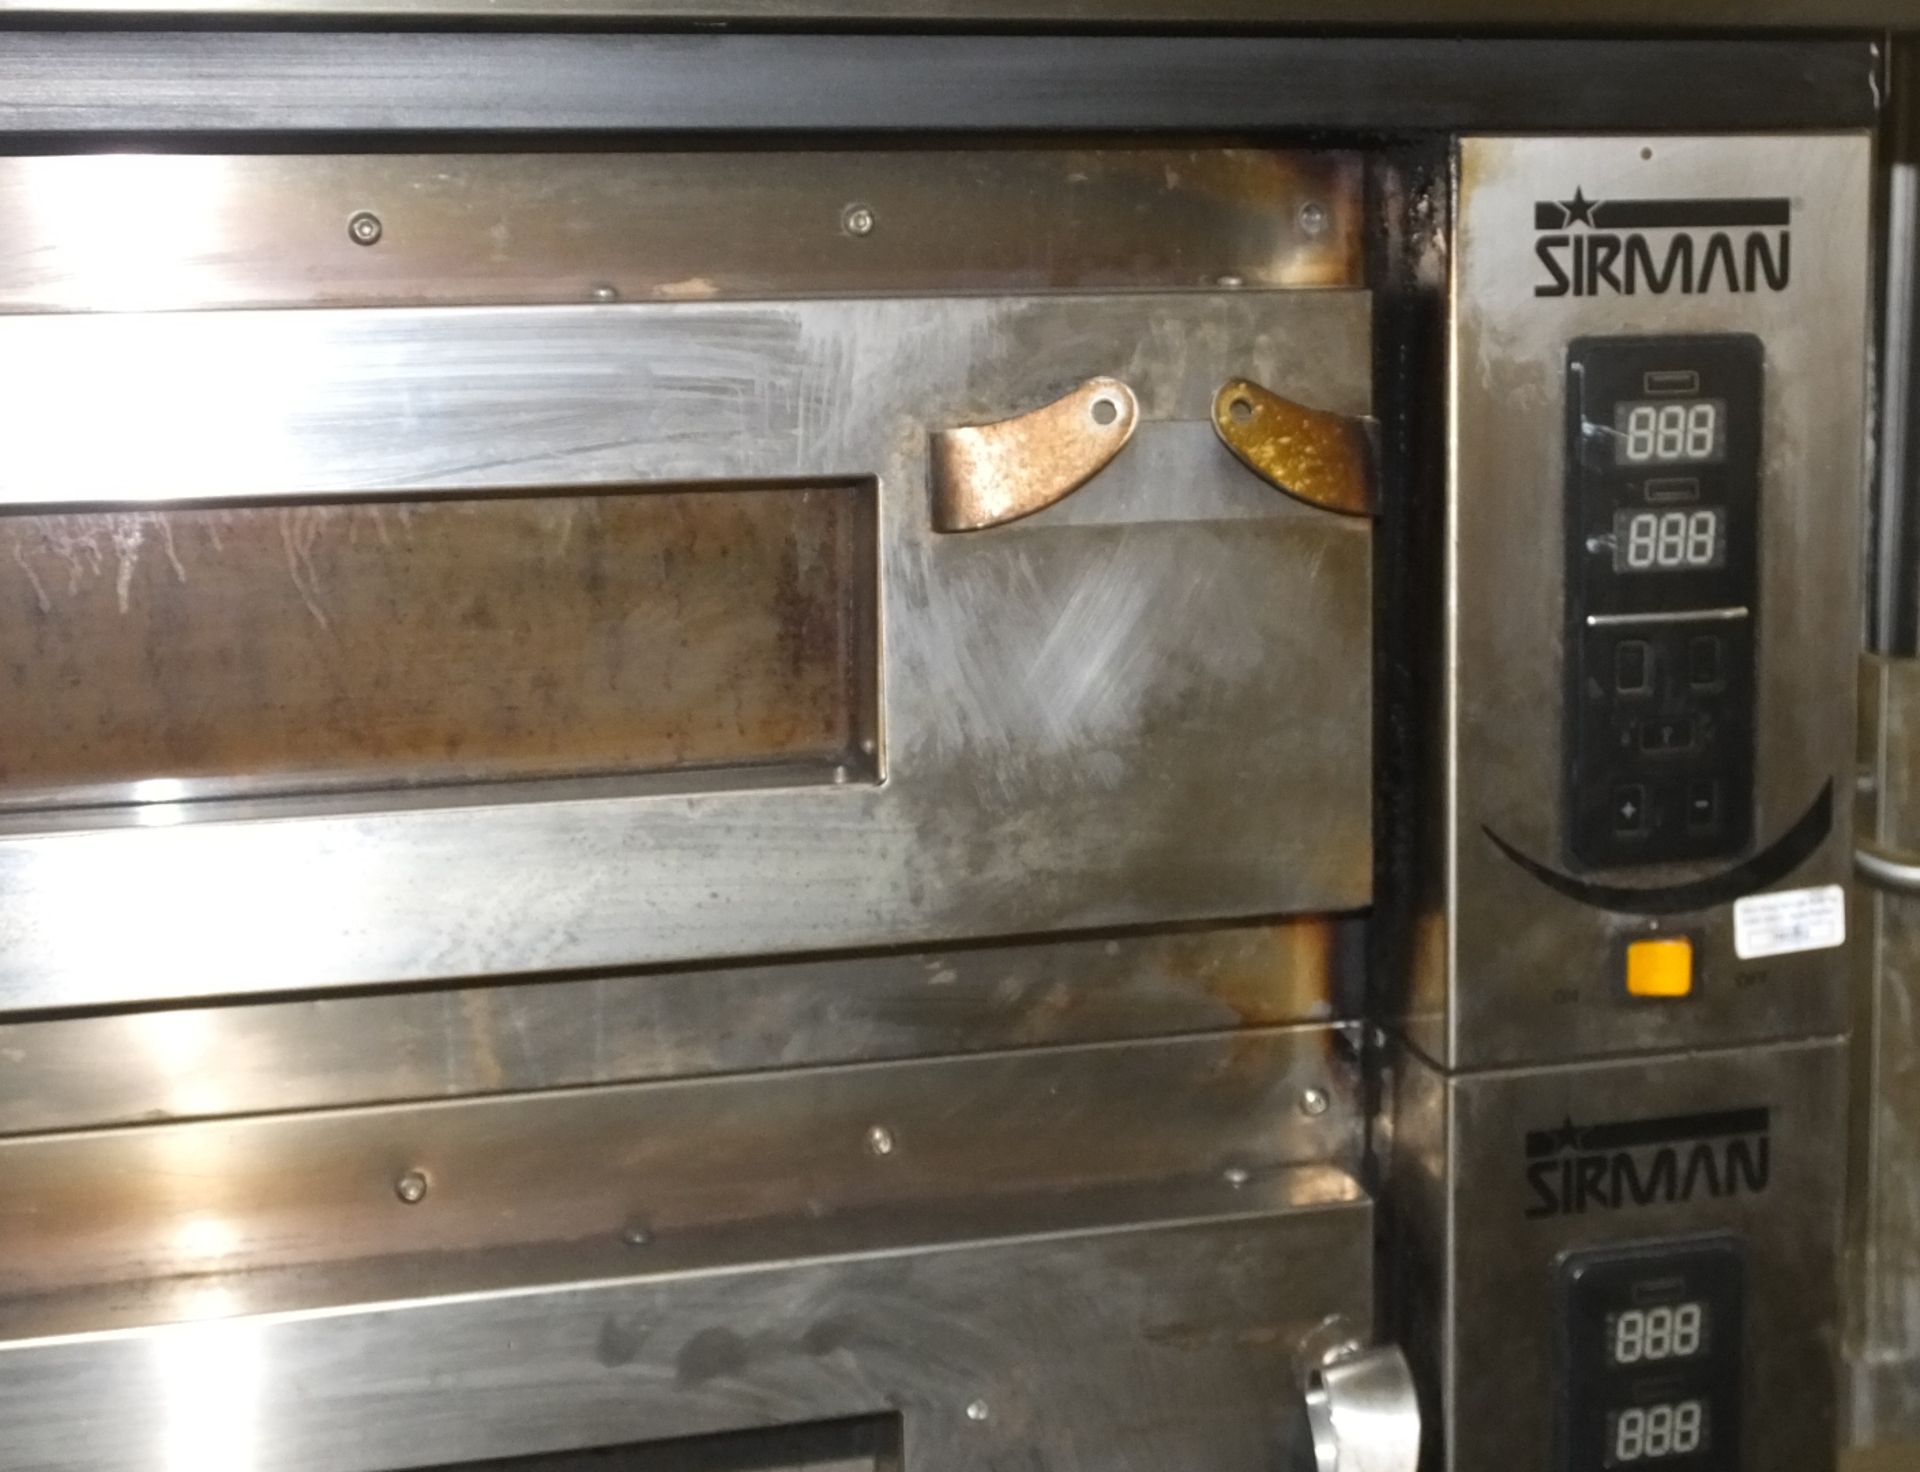 Sirman Cappa Vesuvio 106X70 Faretti Two Deck Oven W1400 x D1170 x H1850mm - Image 2 of 4